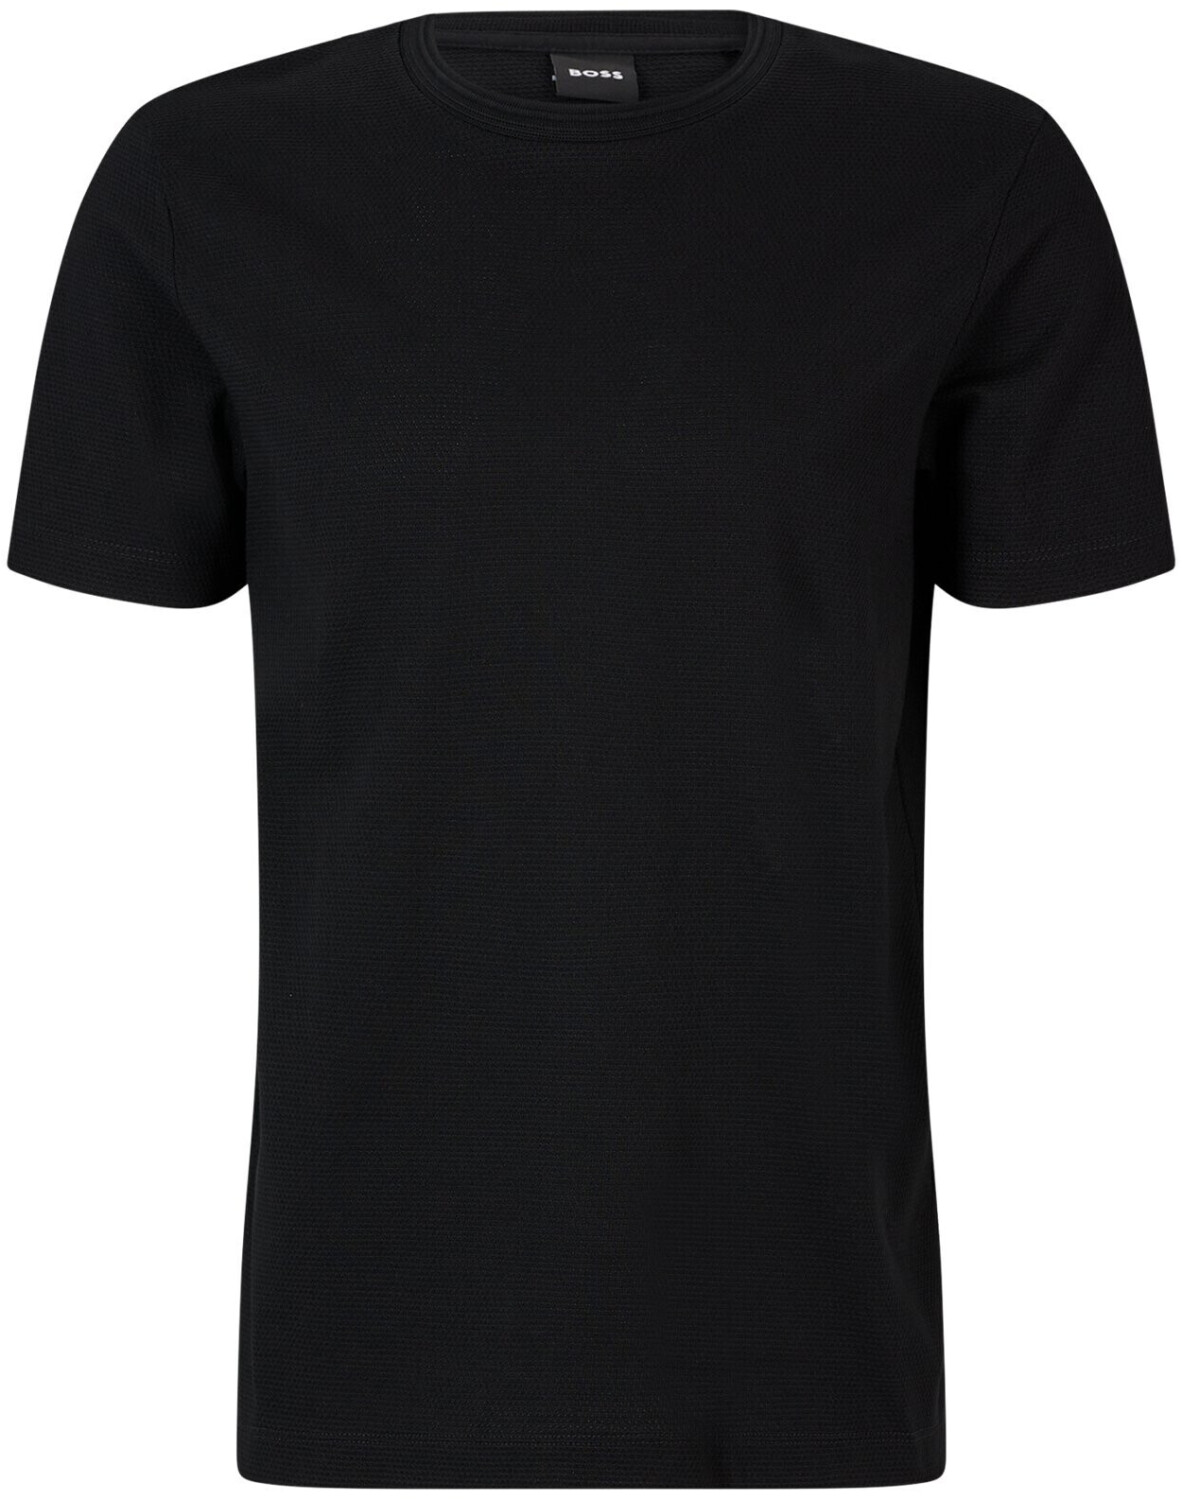 Buy Hugo Boss Tiburt 240 T-Shirt black (50452680-001) from £48.49 ...